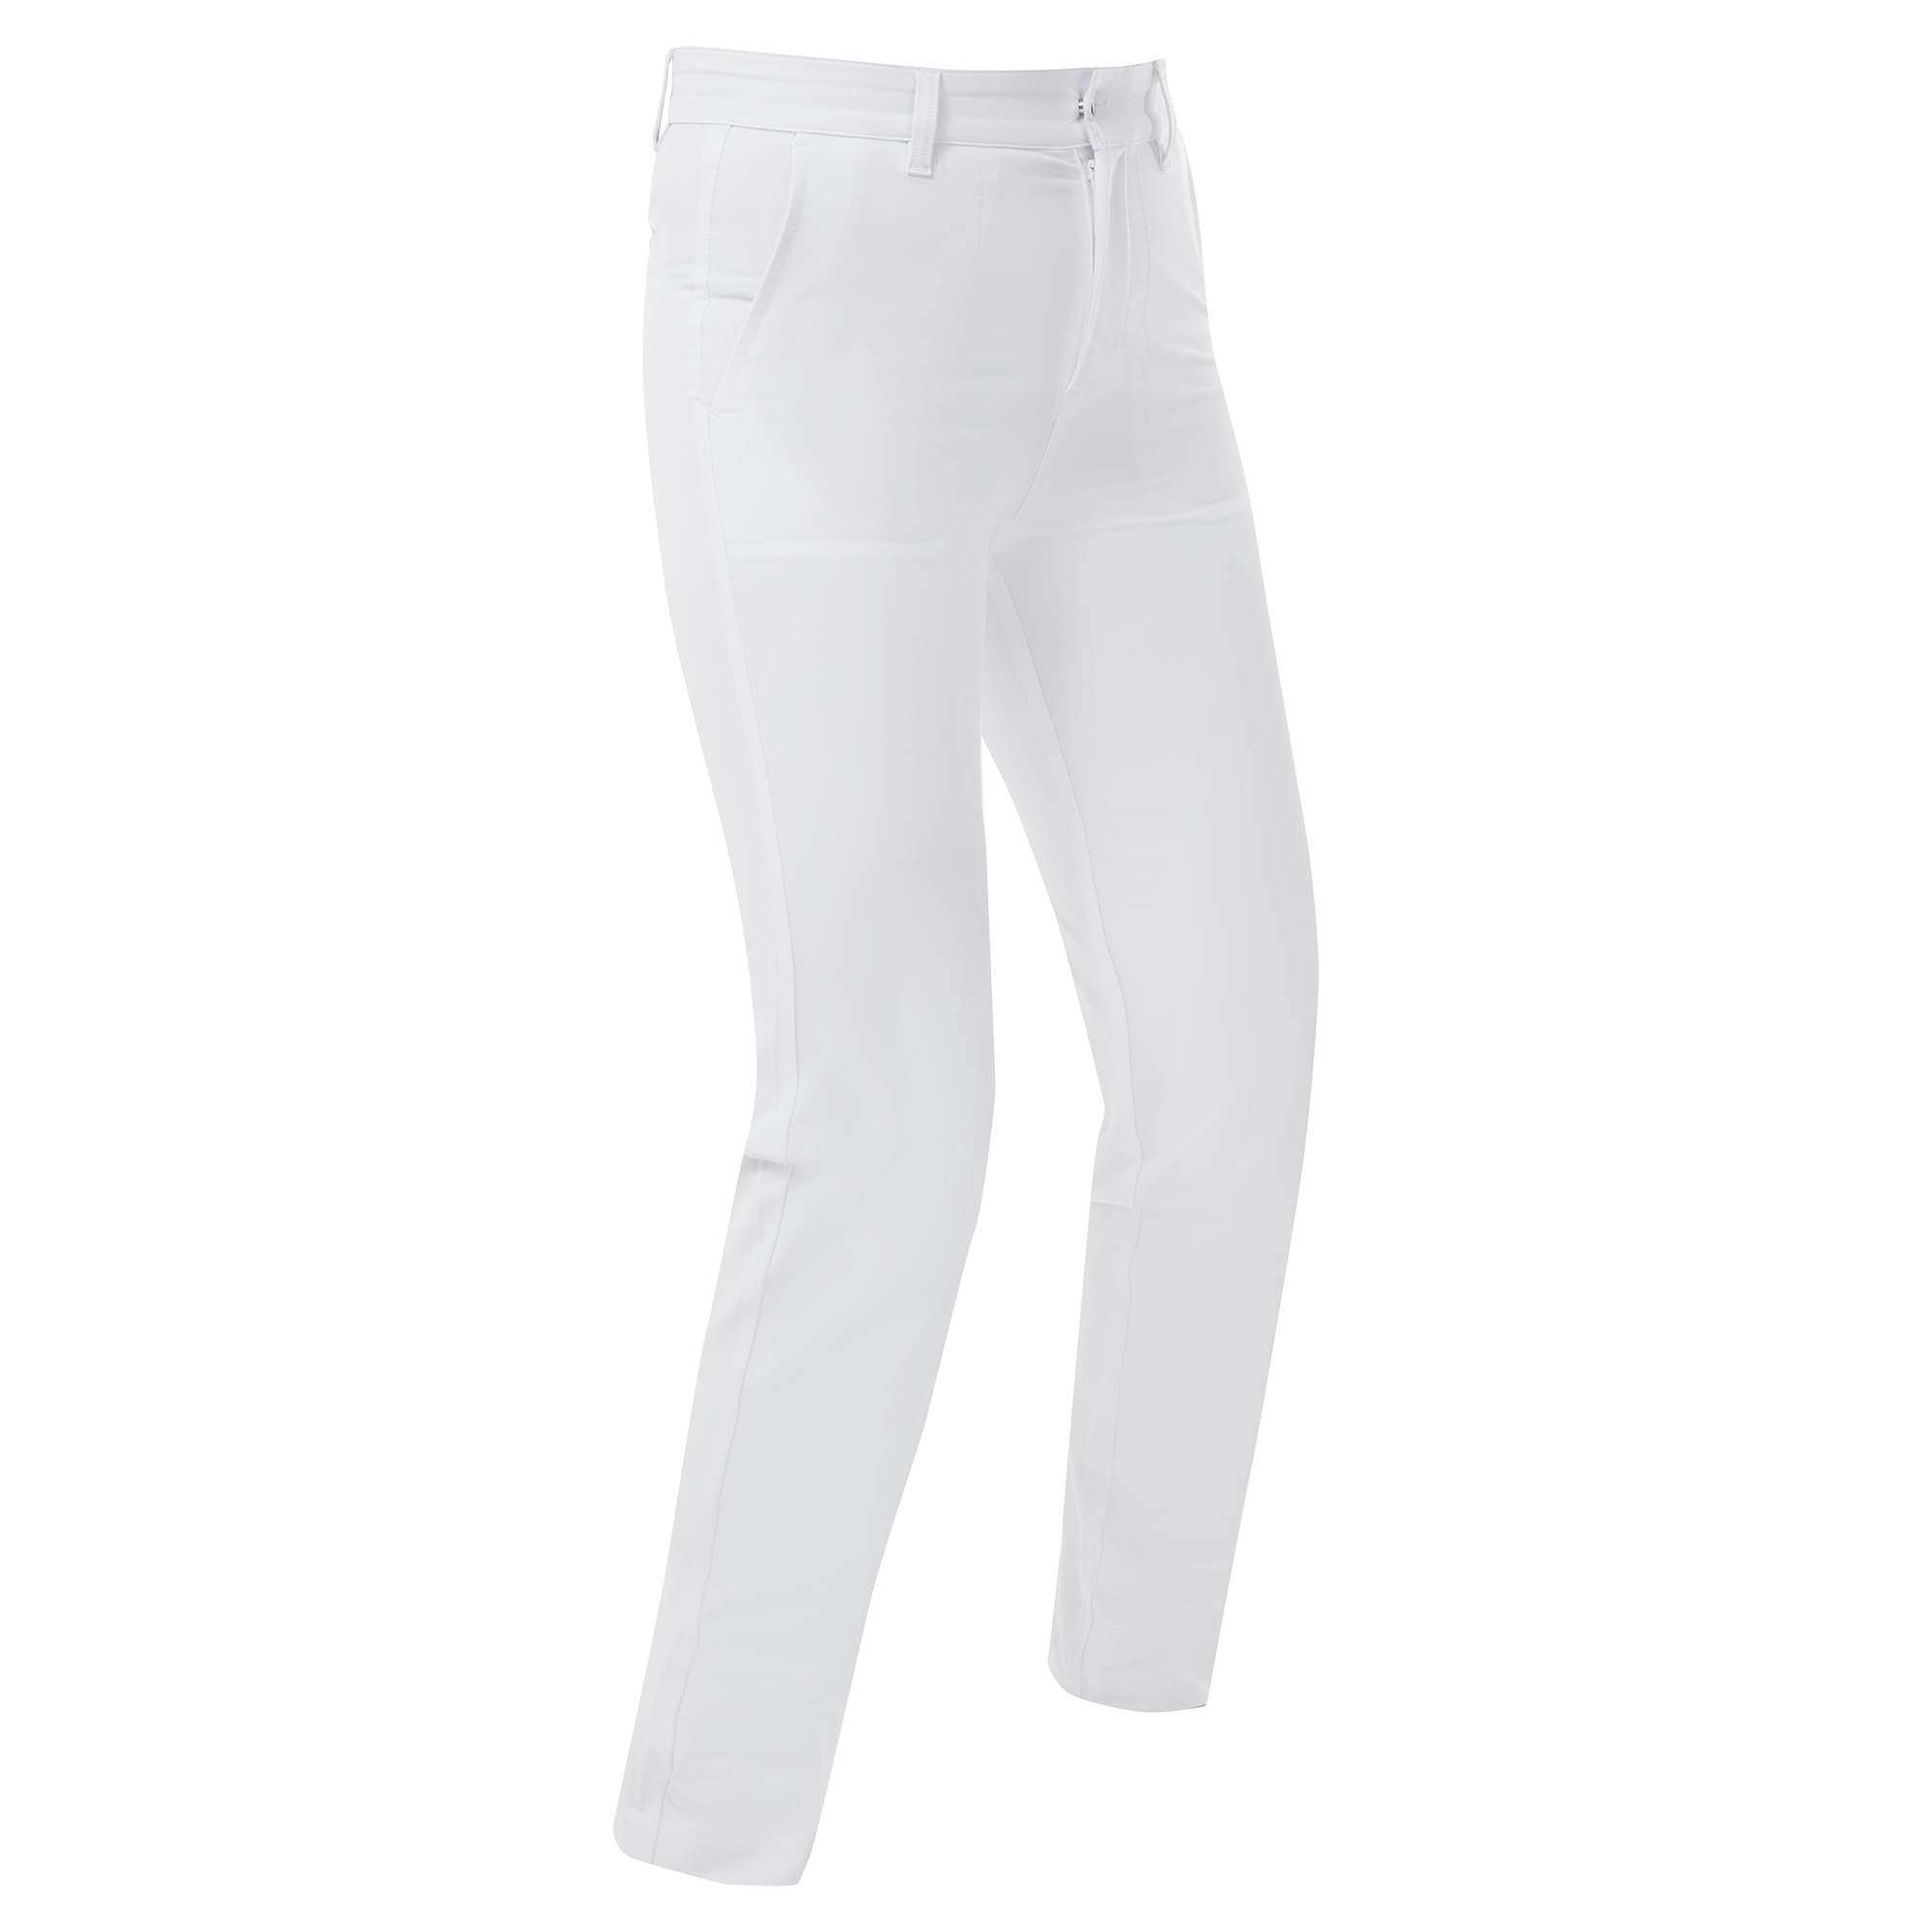 FootJoy Stretch dámské golfové kalhoty, bílé